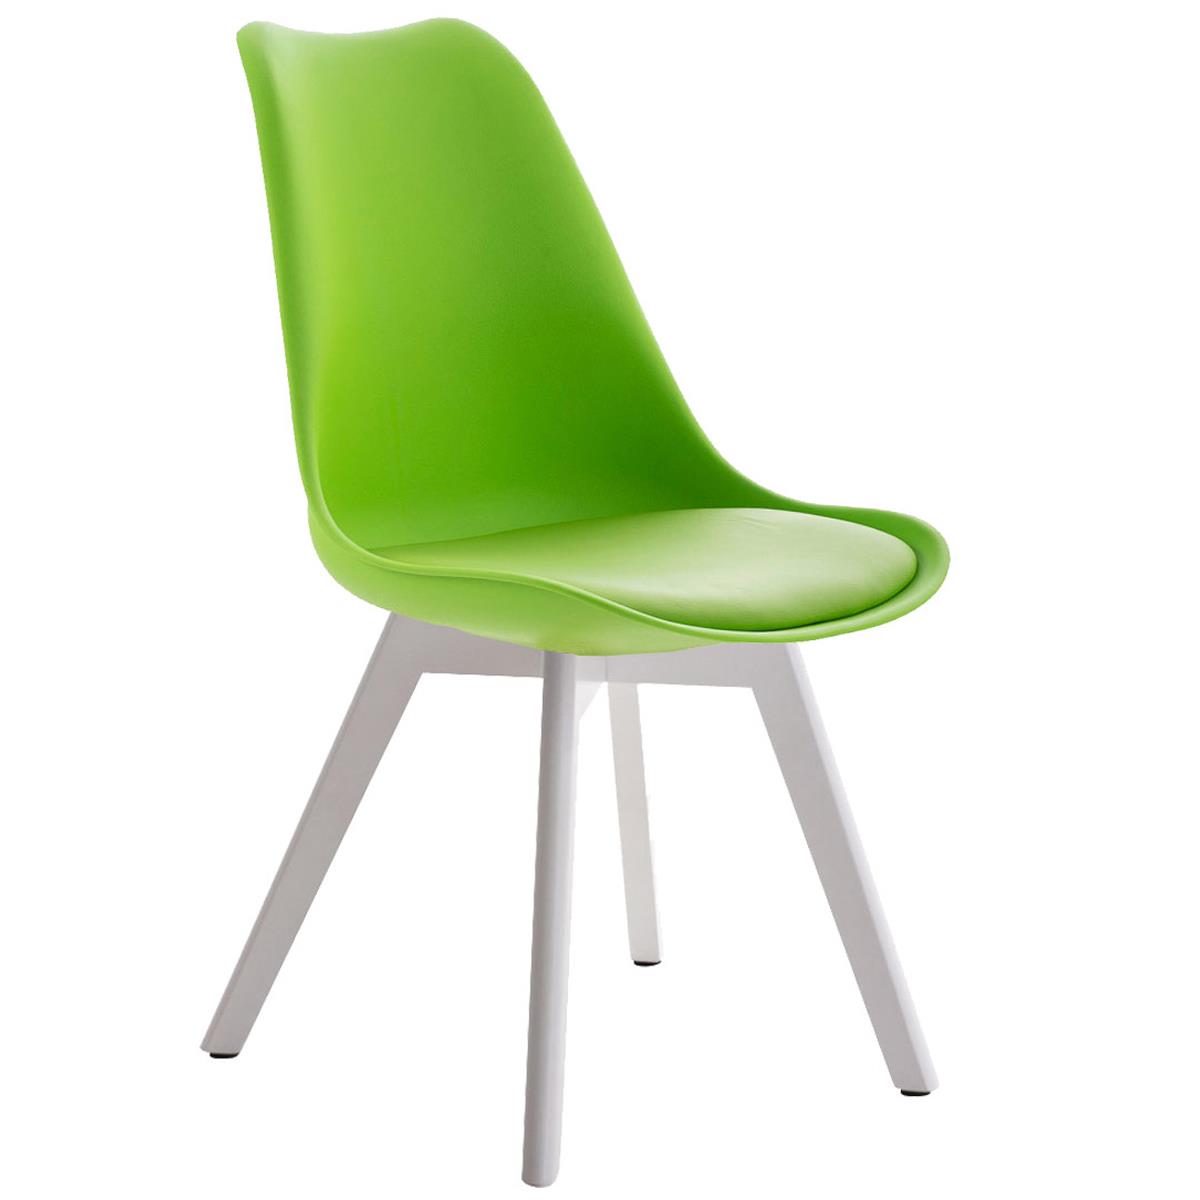 Cadeira de Visita BOSFORO, Estrutura Resistente, Pernas Brancas, Em Pele, Cor Verde